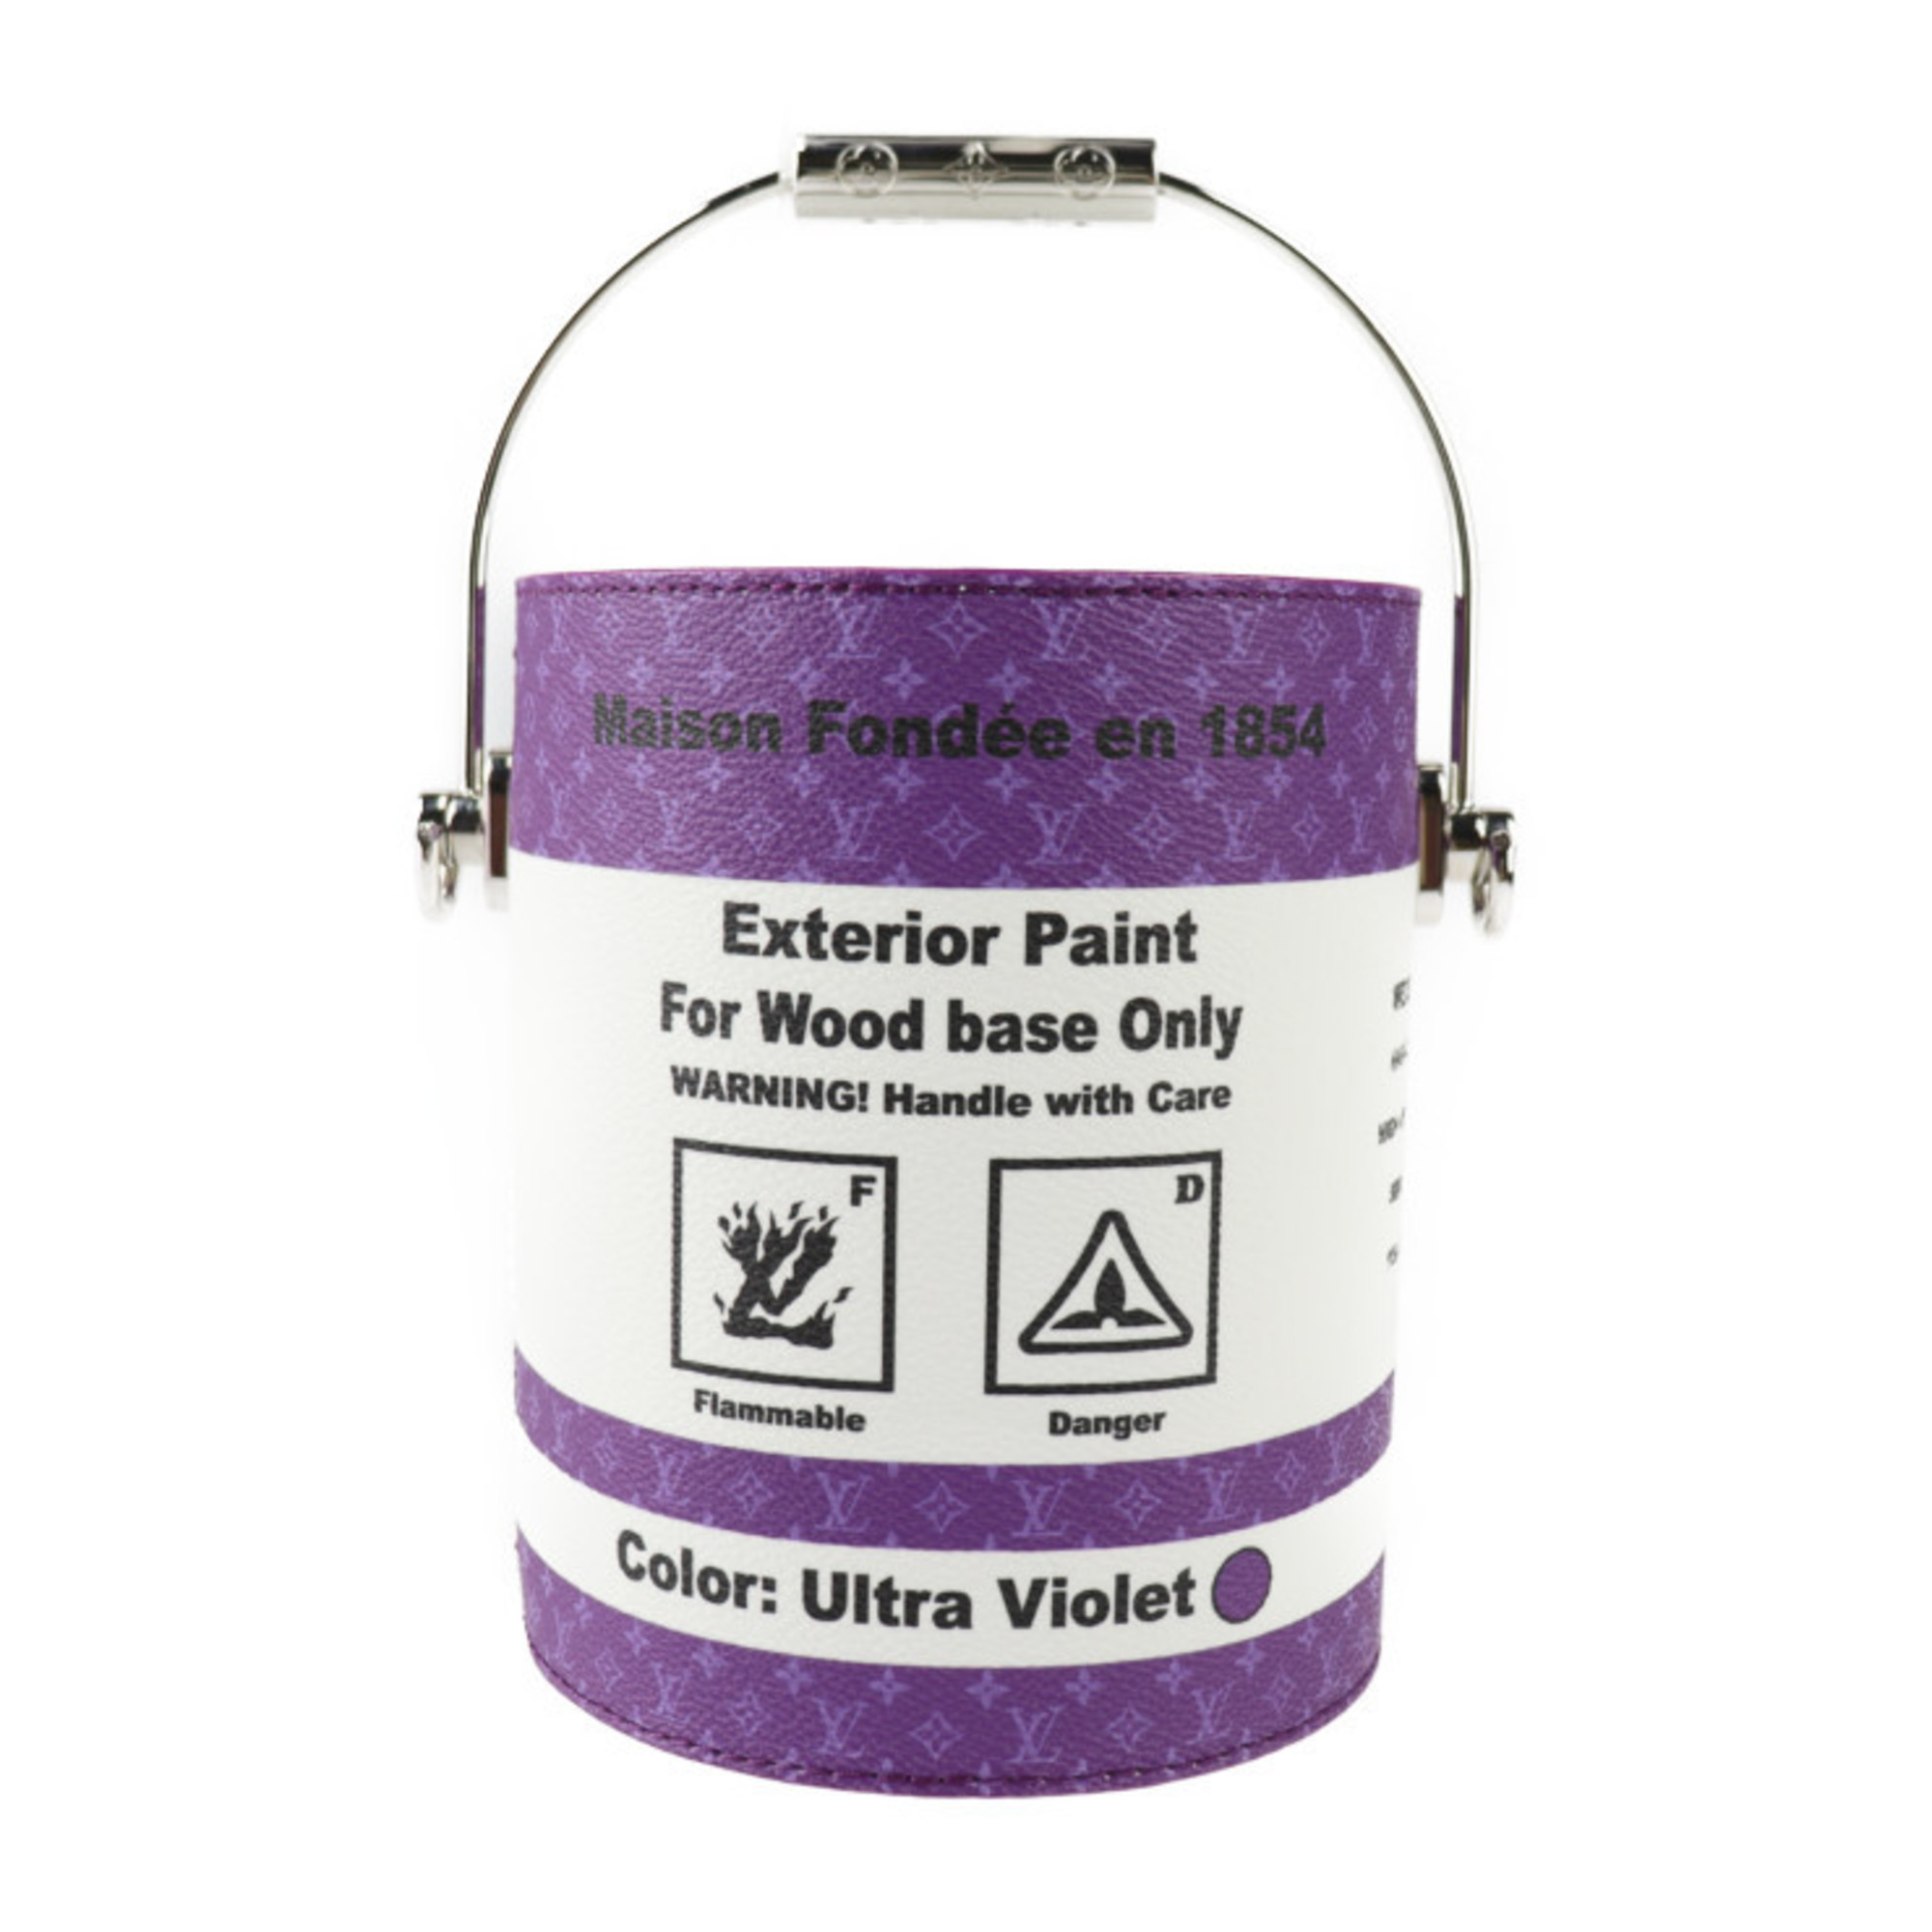 LOUIS VUITTON LV Paint Can Handbag M81591 PVC Canvas x Leather Purple White Silver Hardware 2WAY Shoulder Bag Monogram Vuitton